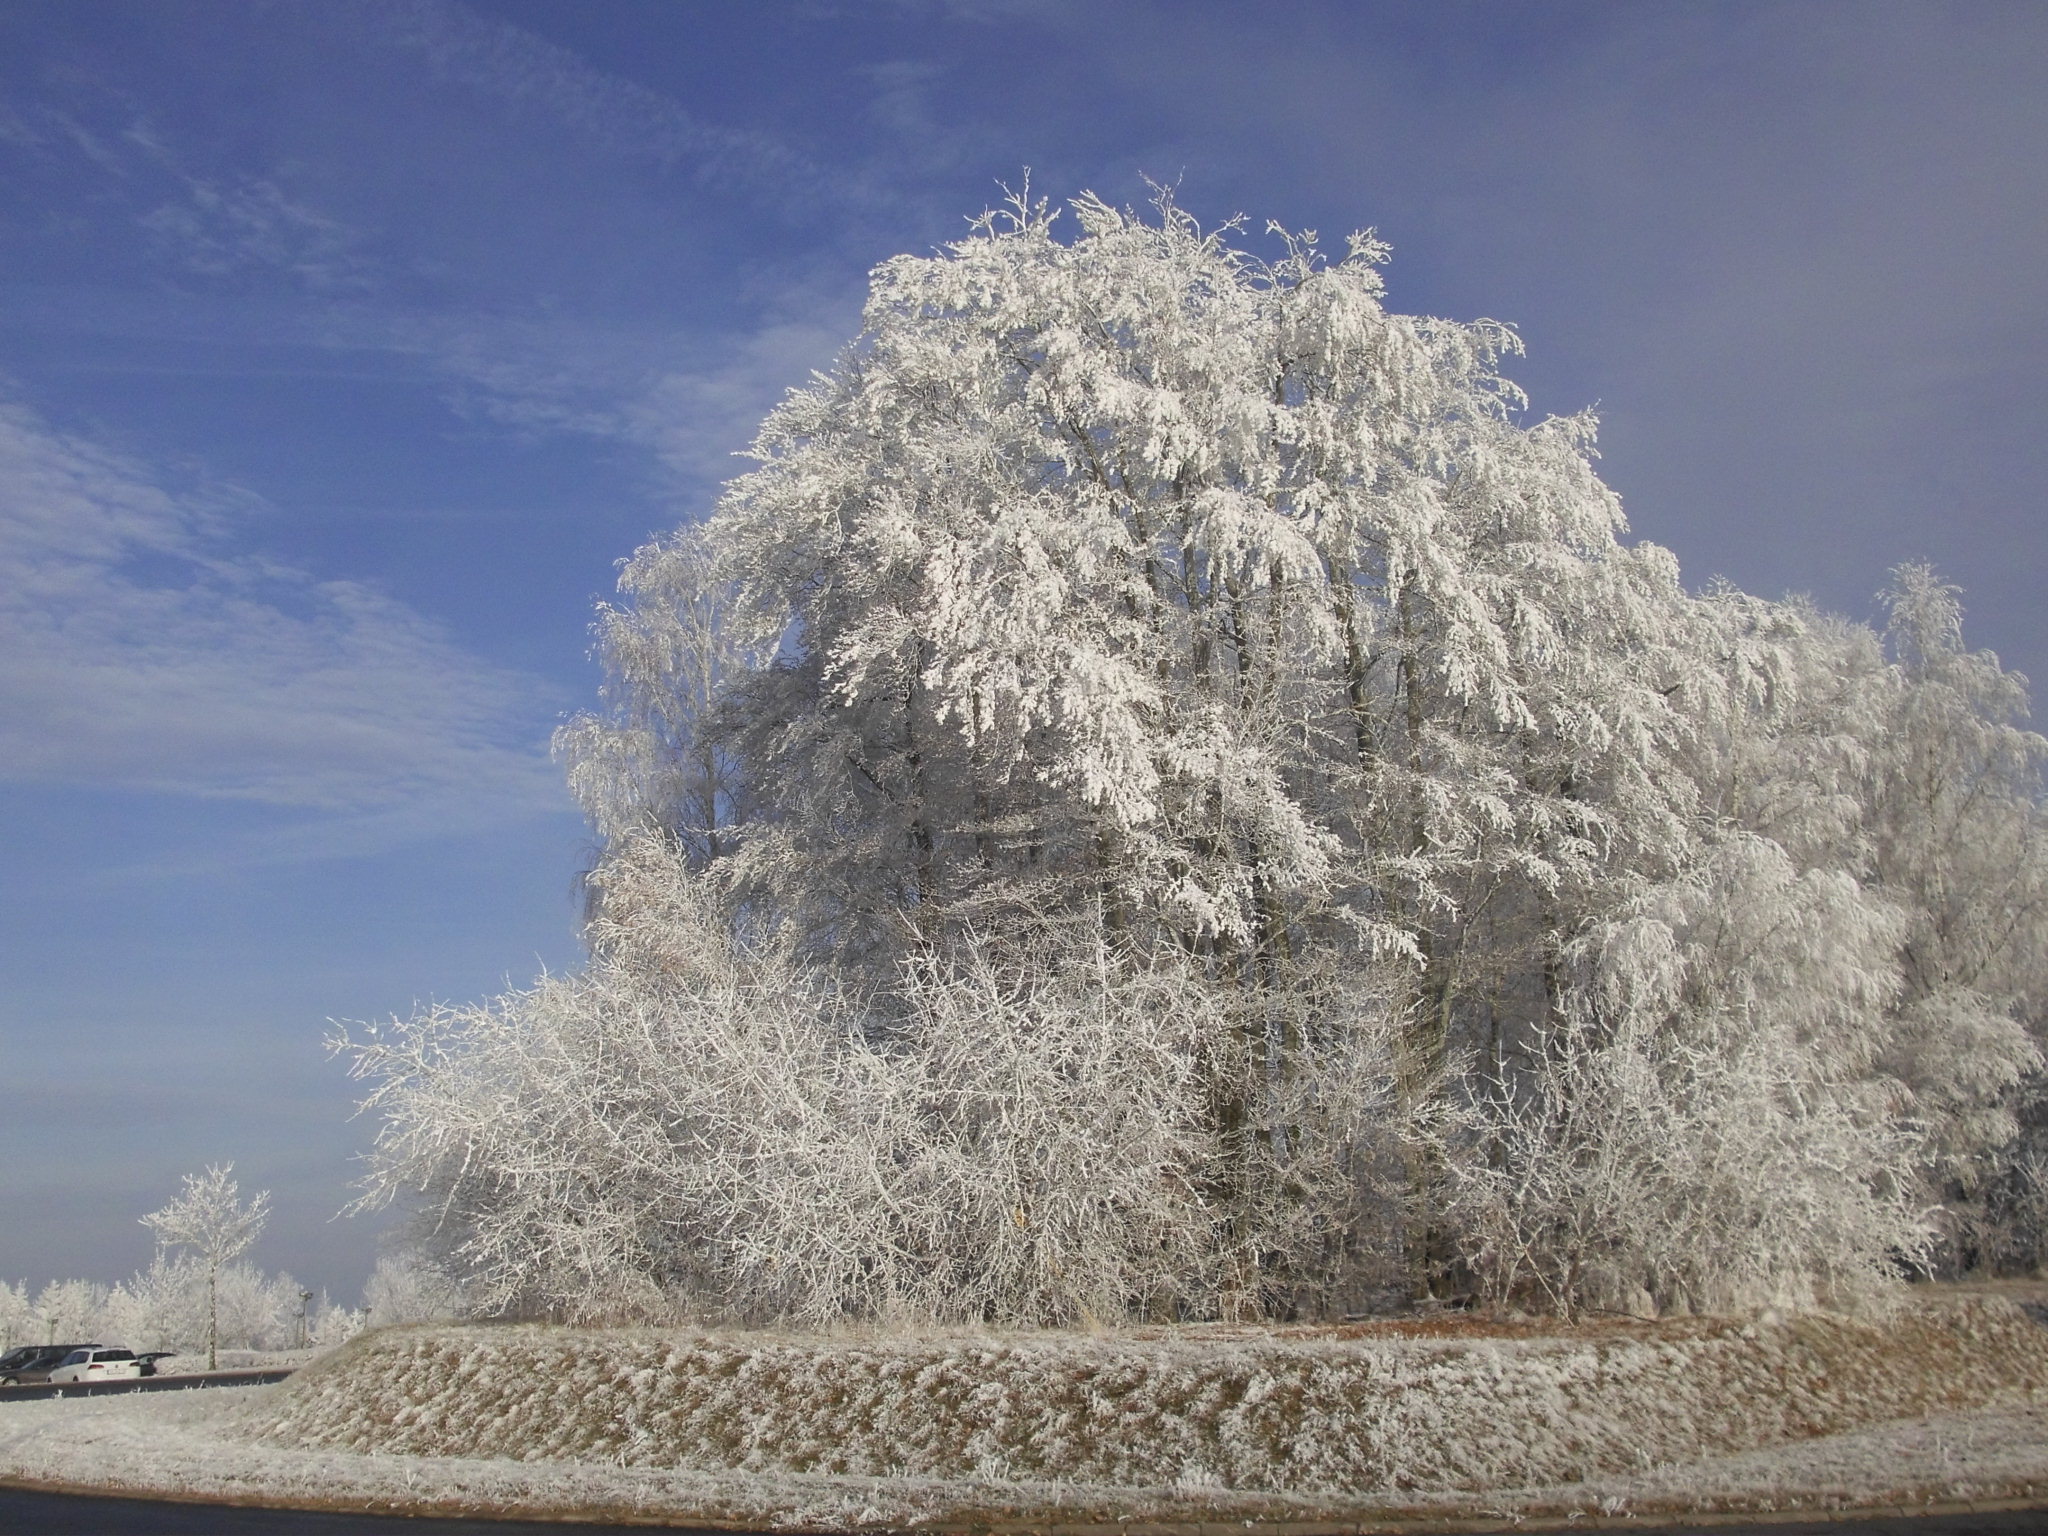 Baum im Winter